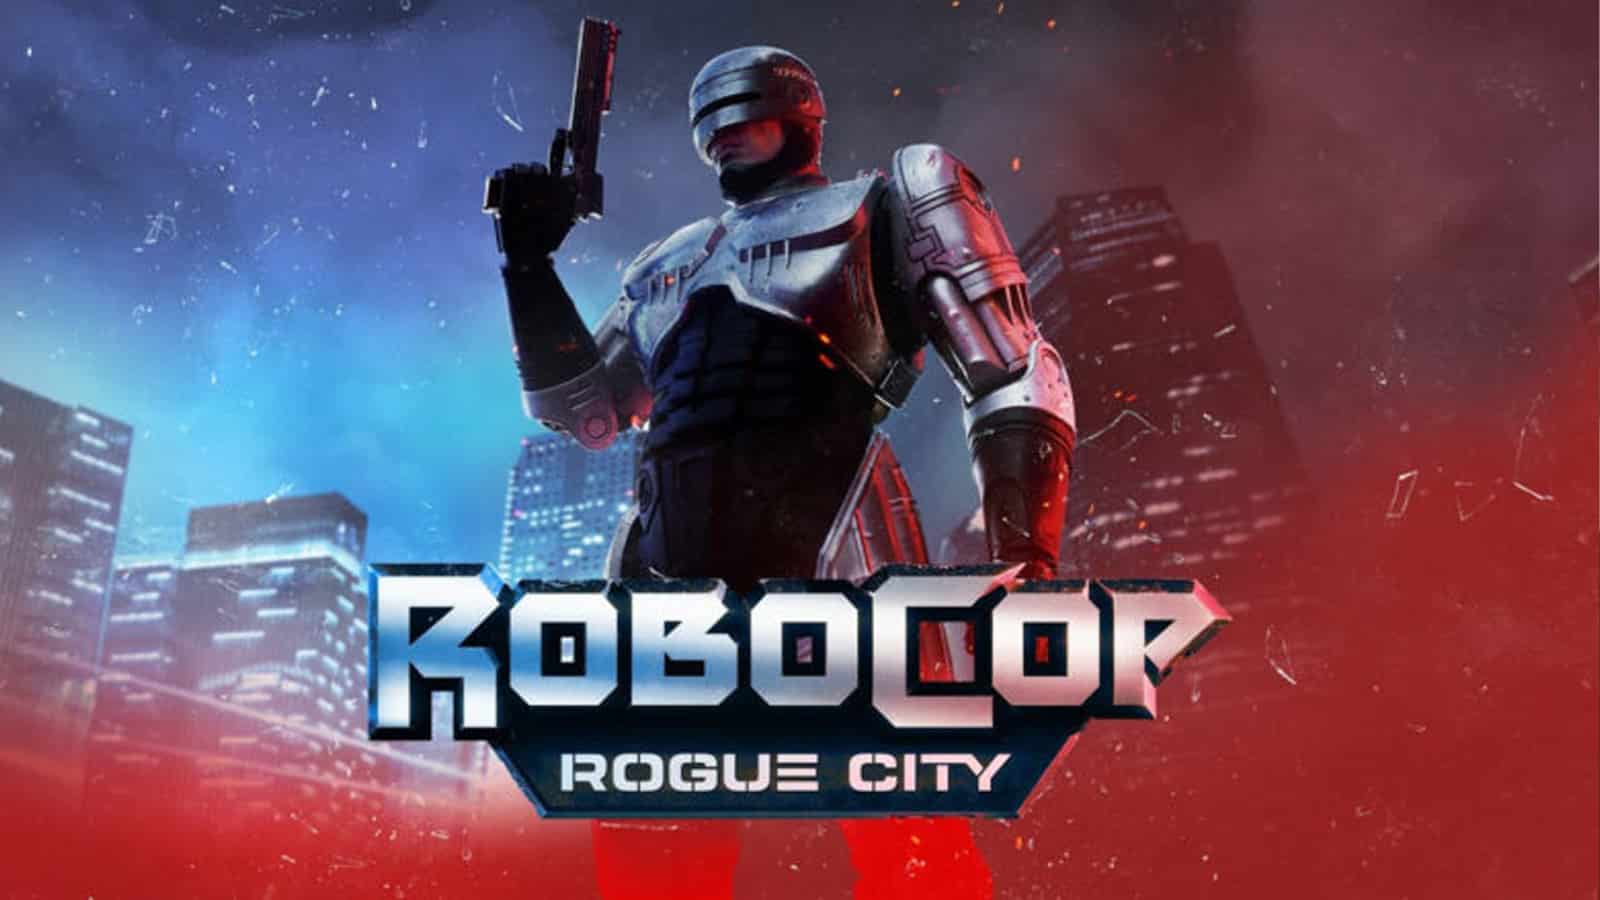 An image of Robocop Rogue City